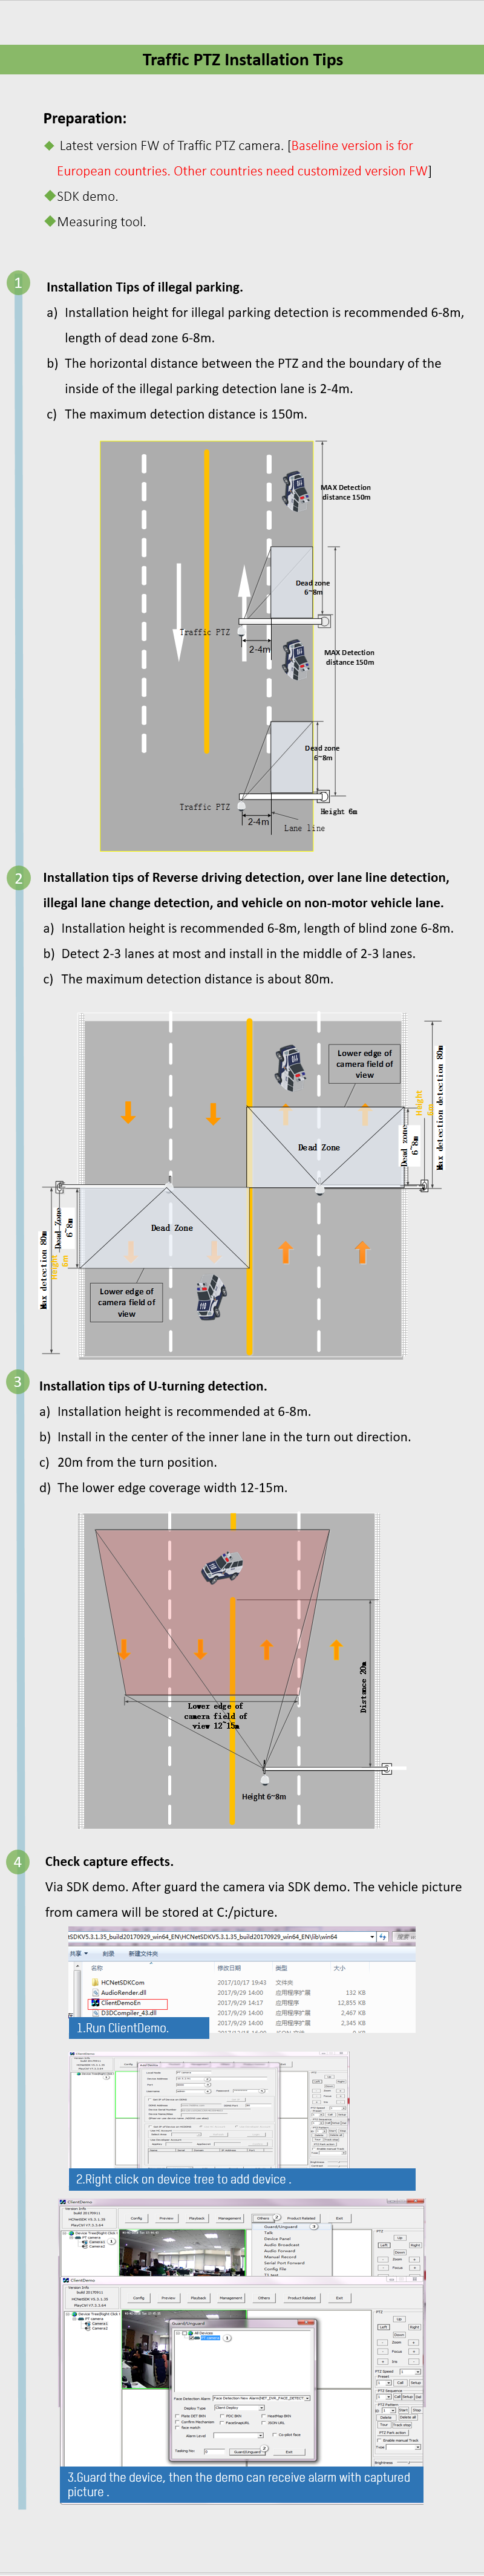 46.Traffic PTZ Installation Tips.bmp